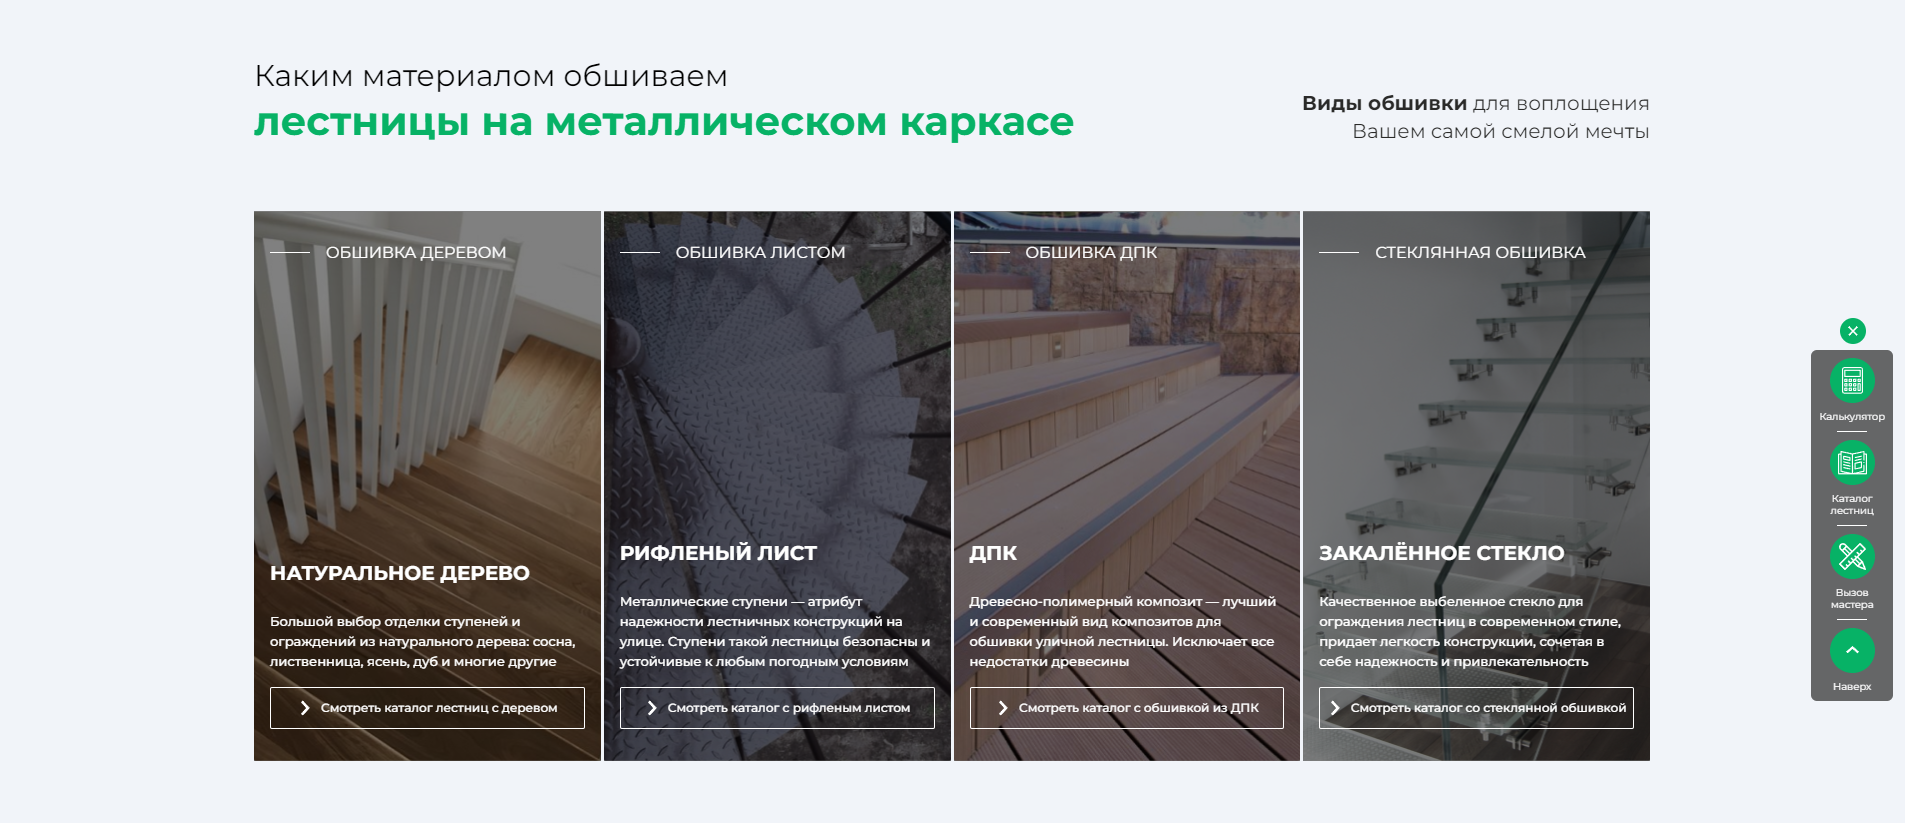 Кейс — как мы продали лестниц на металлокаркасе на 55 000 0000 рублей за год с помощью правильного сайта